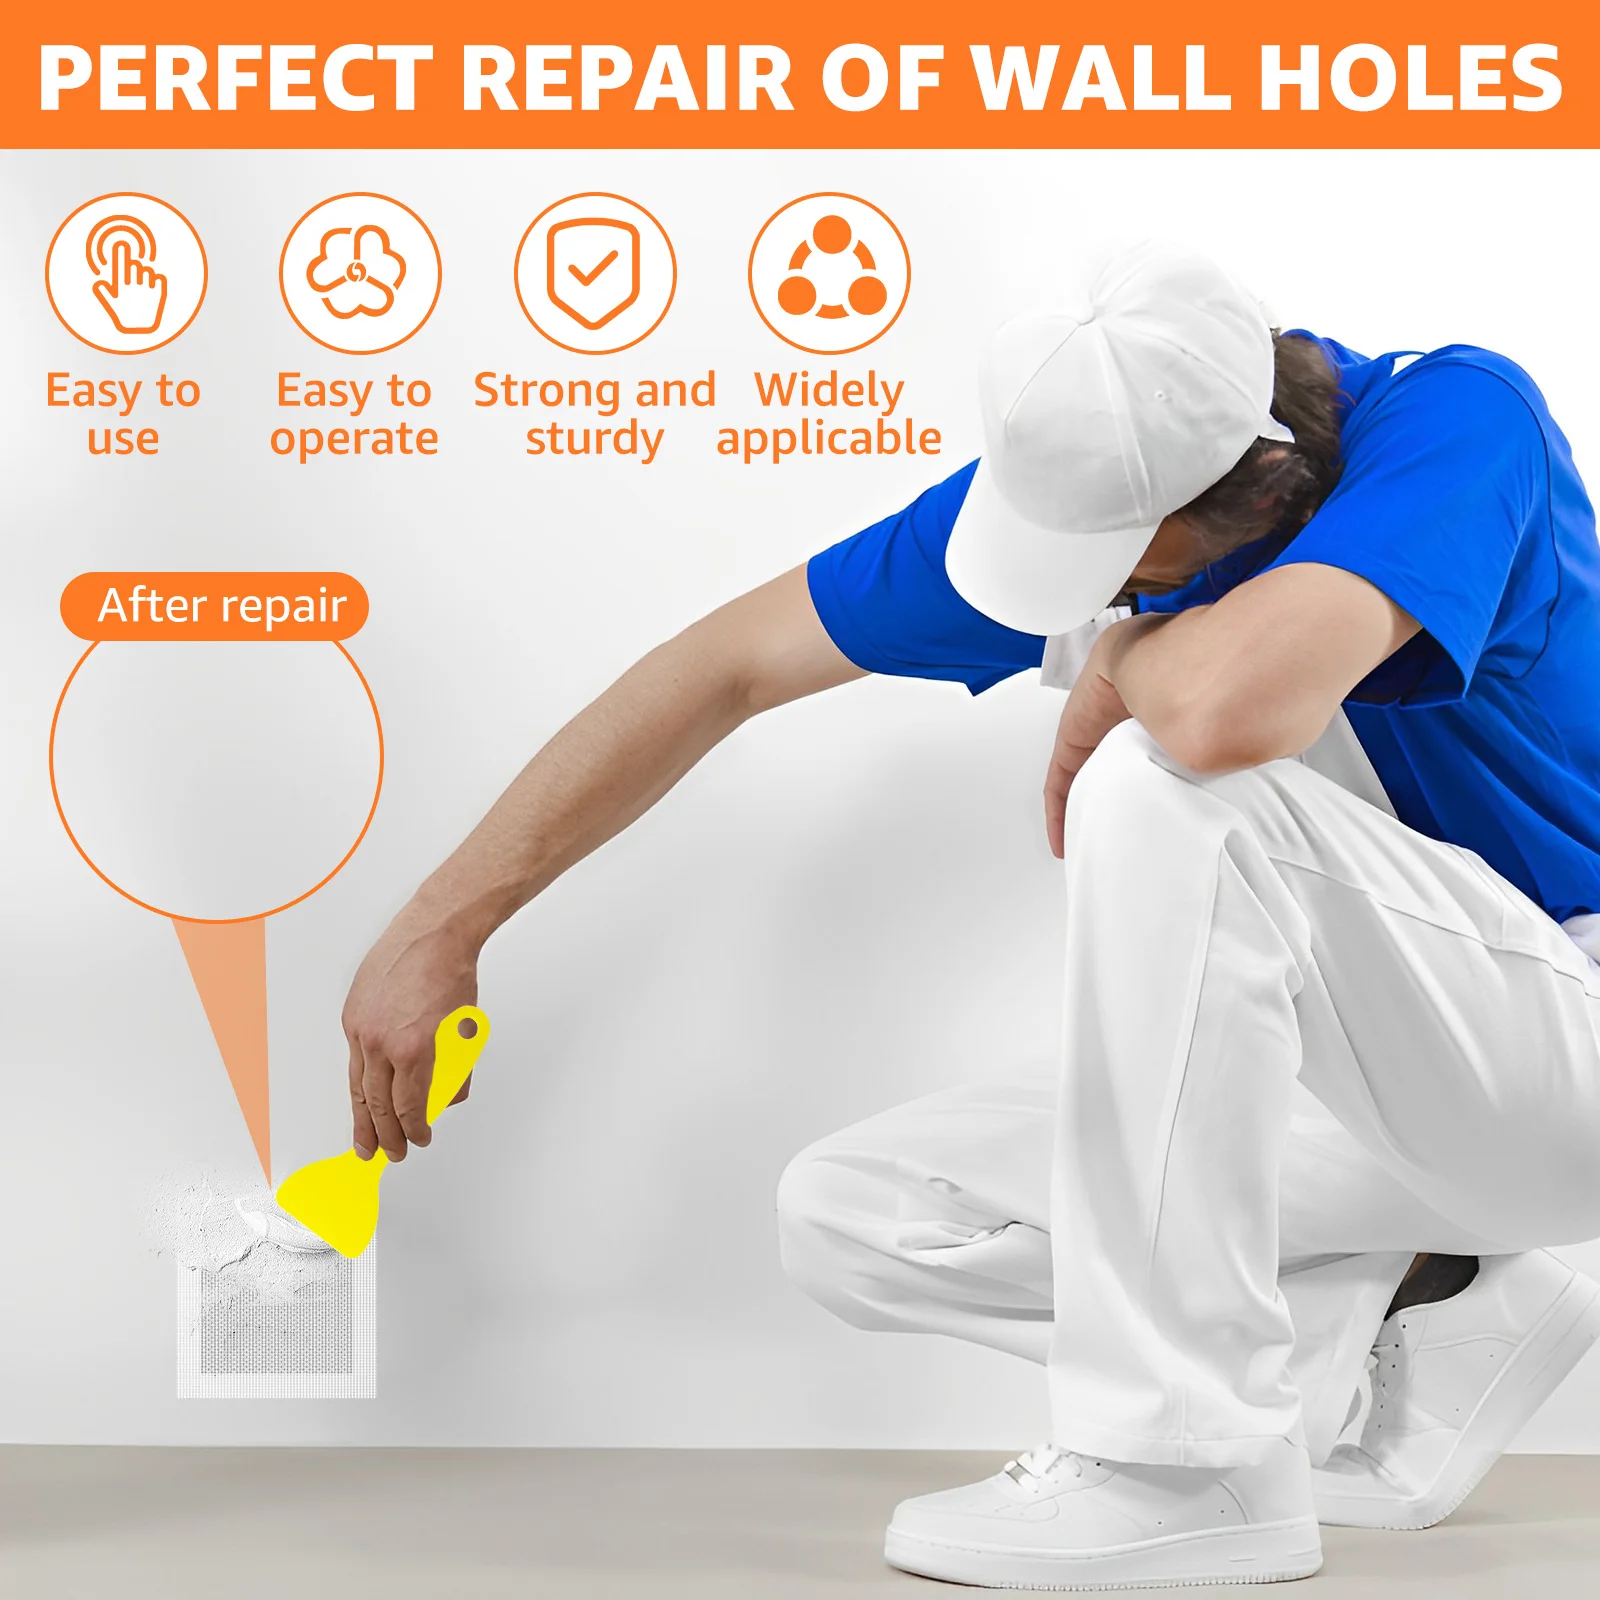 https://ae01.alicdn.com/kf/S6abc4be984294059afdc4f678606b148Y/19Pcs-Drywall-Repair-Kit-2-4-6-8inch-Metal-Wall-Hole-Repair-Patch-Kit-with-Scraper.jpg